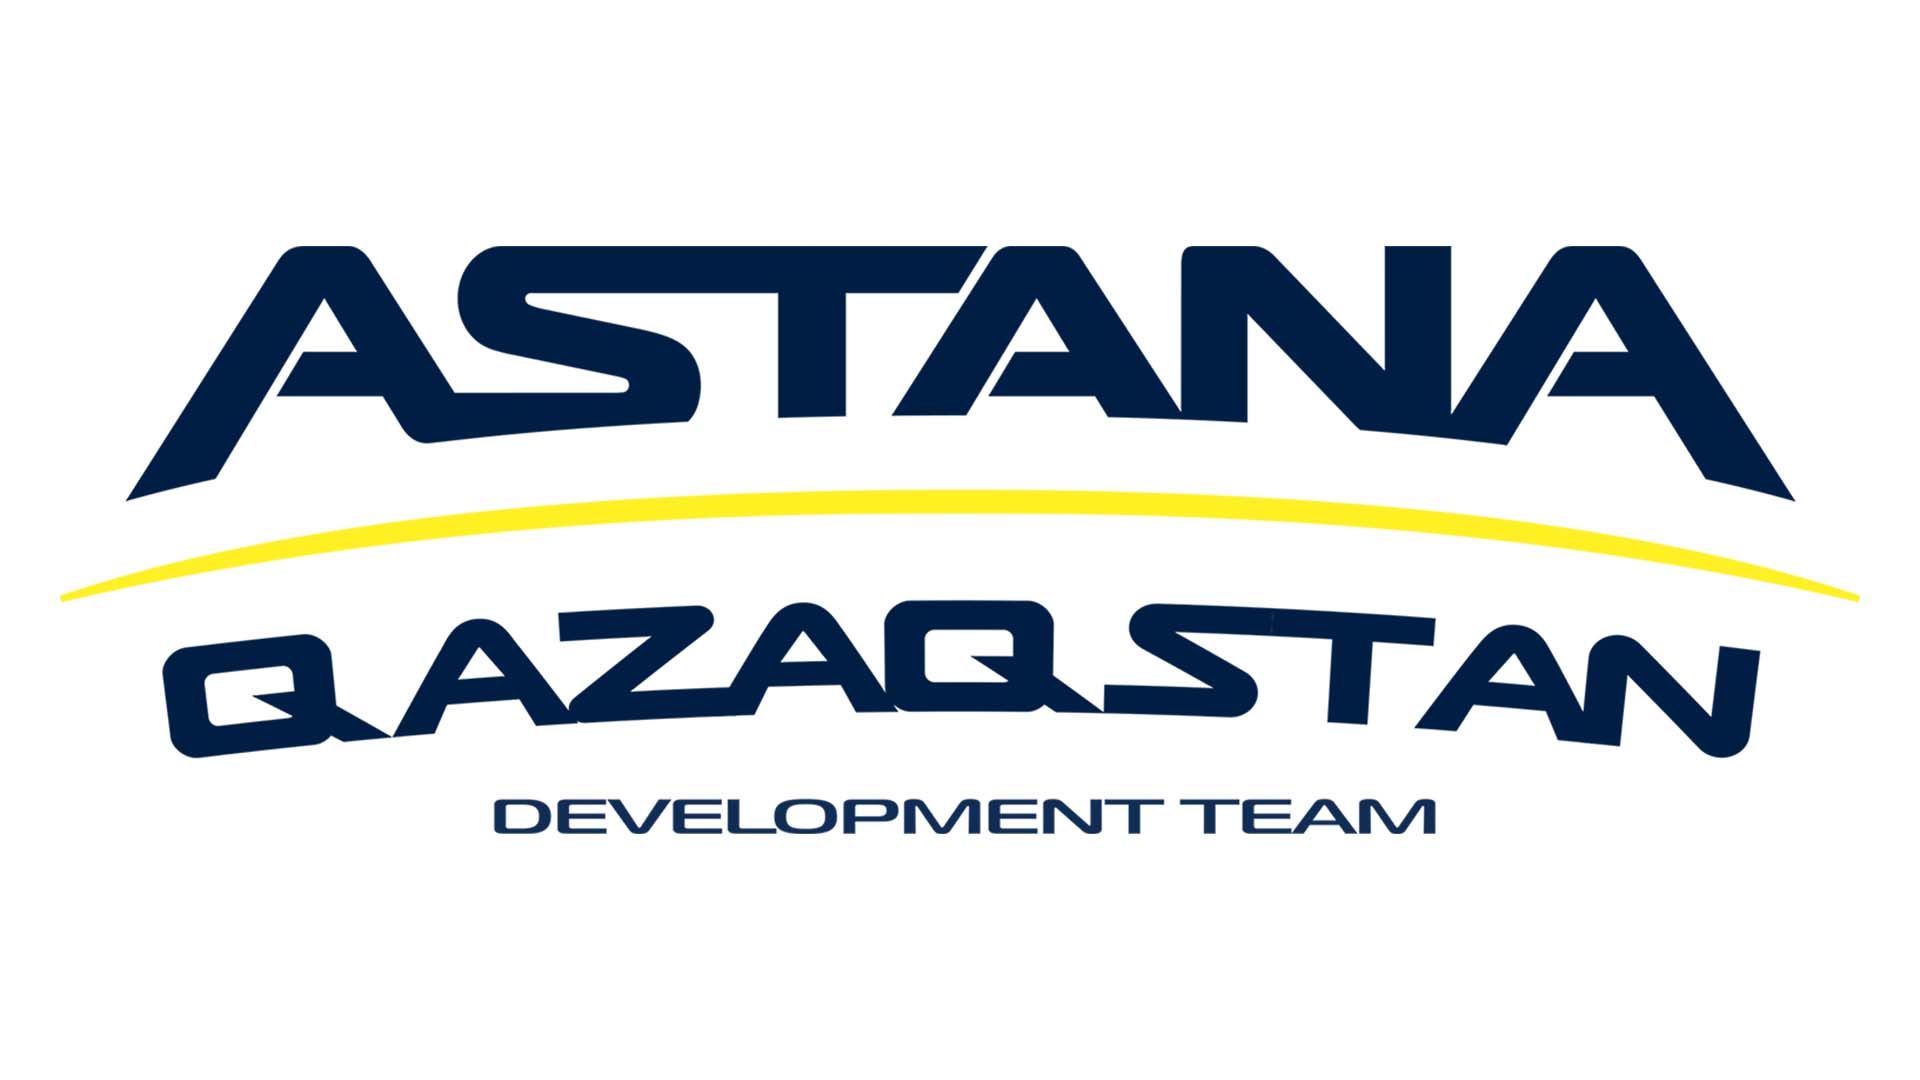 "Astana Qazaqstan Team" жаңа жастар командасын құрады